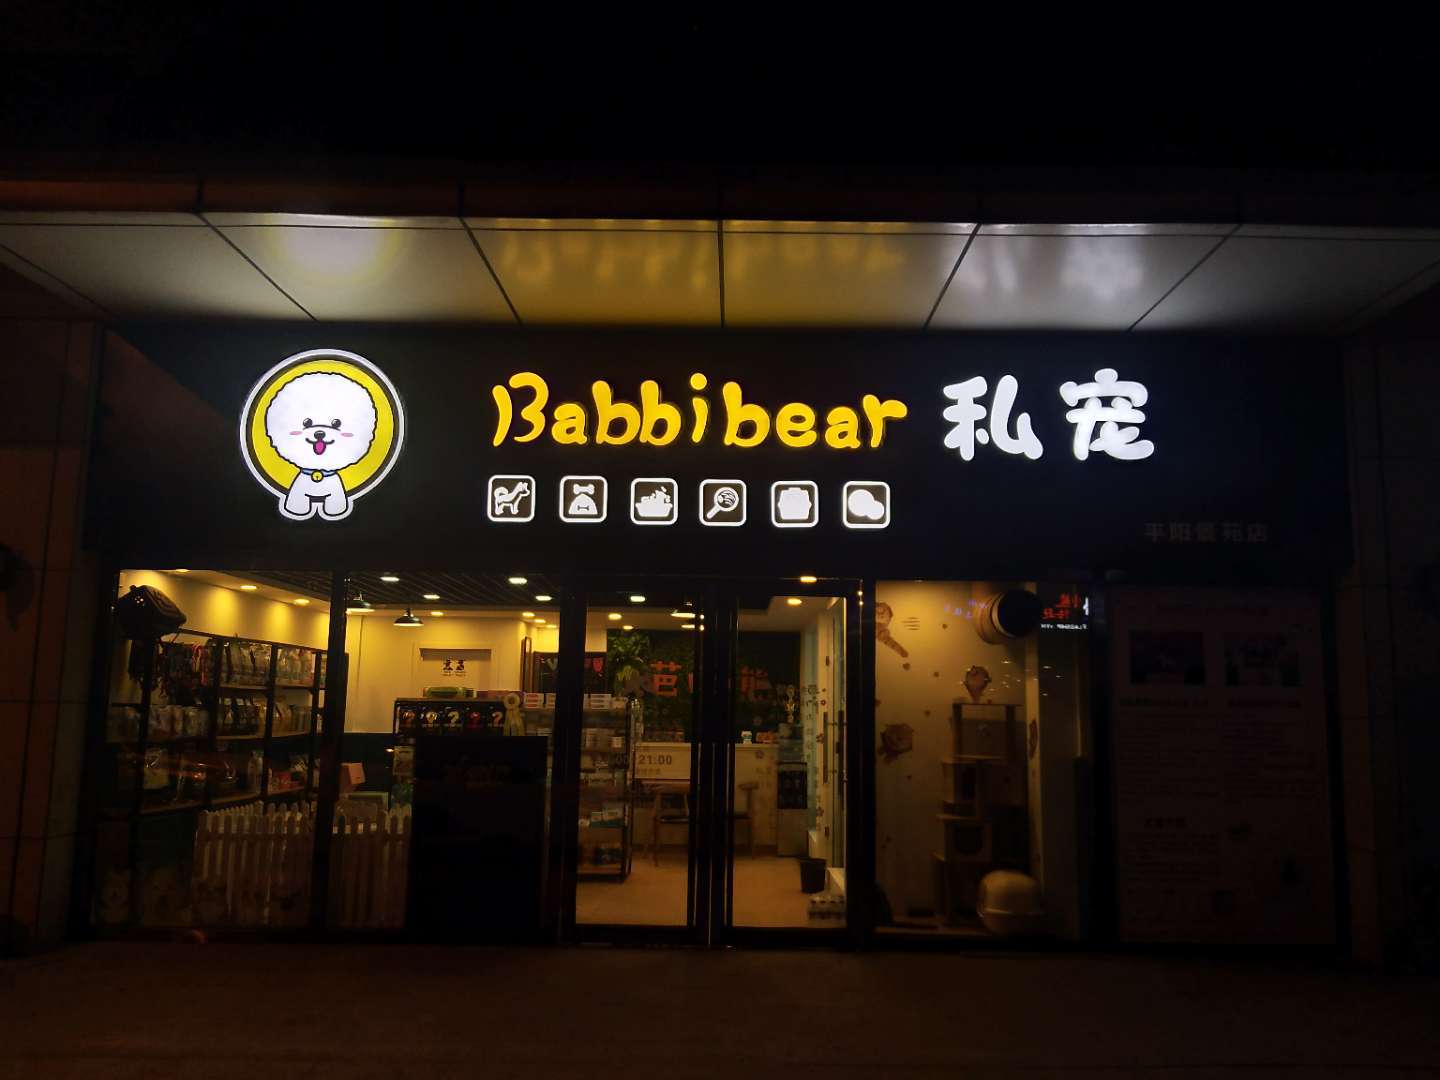 Babbi bear私宠芭比熊